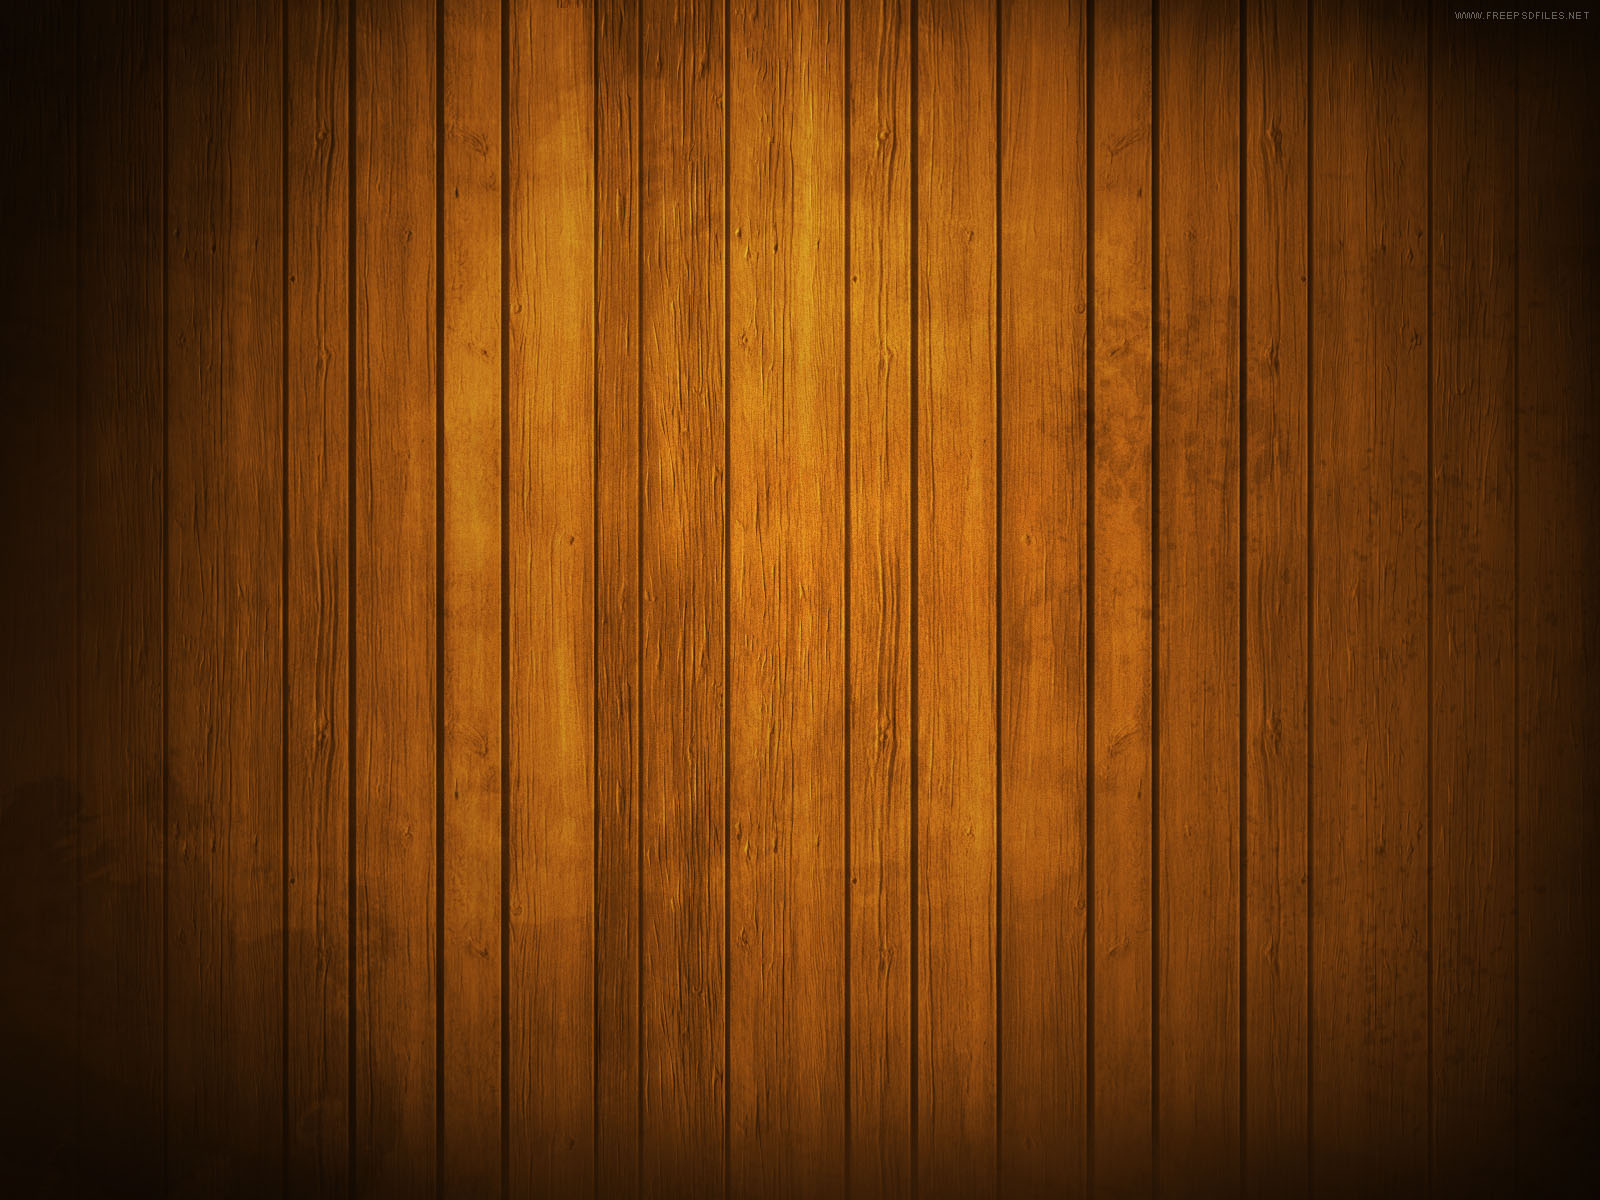 Hình nền gỗ - Một bức tranh kết hợp với hình nền gỗ sẽ khiến bạn cảm thấy như đang đứng giữa một khu rừng rậm rạp. Hãy thư giãn và tận hưởng cái nhìn này, tạo cảm giác gần gũi với thiên nhiên.